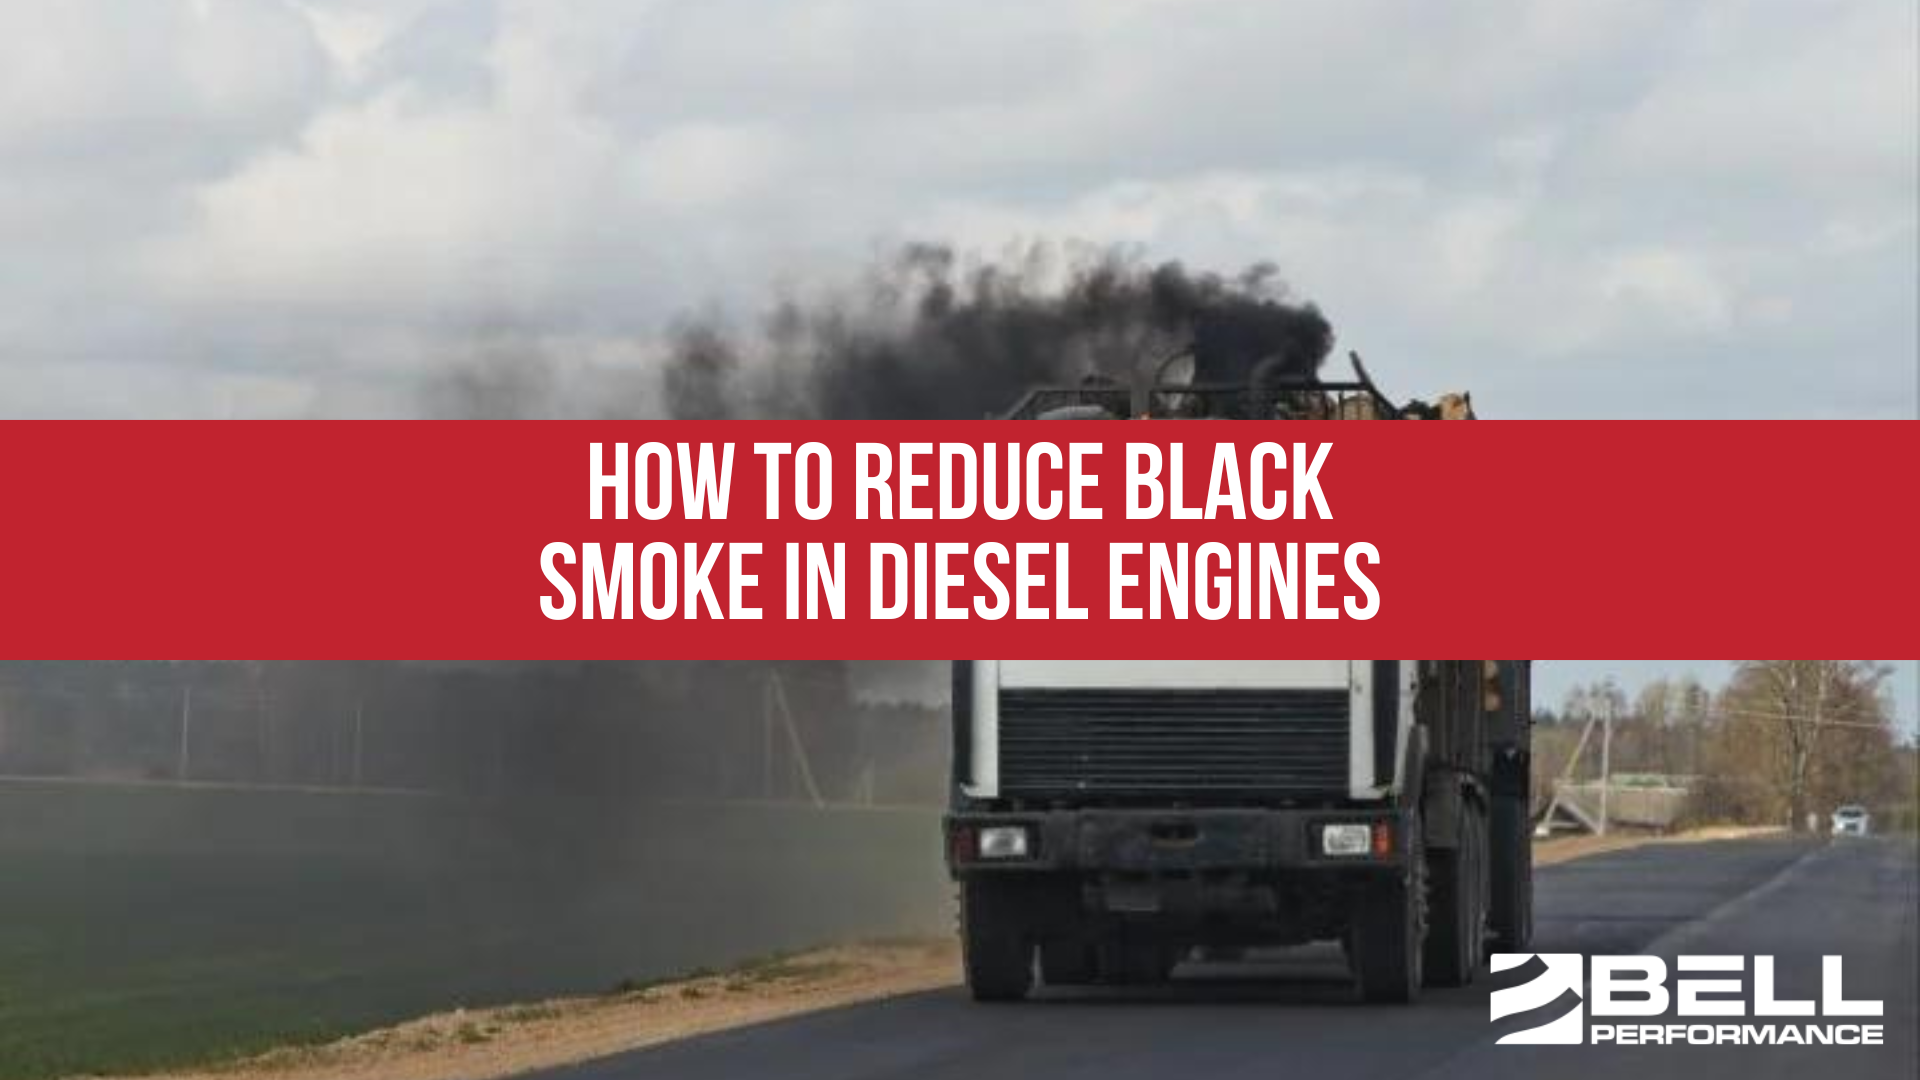 How to reduce black smoke in diesel engines